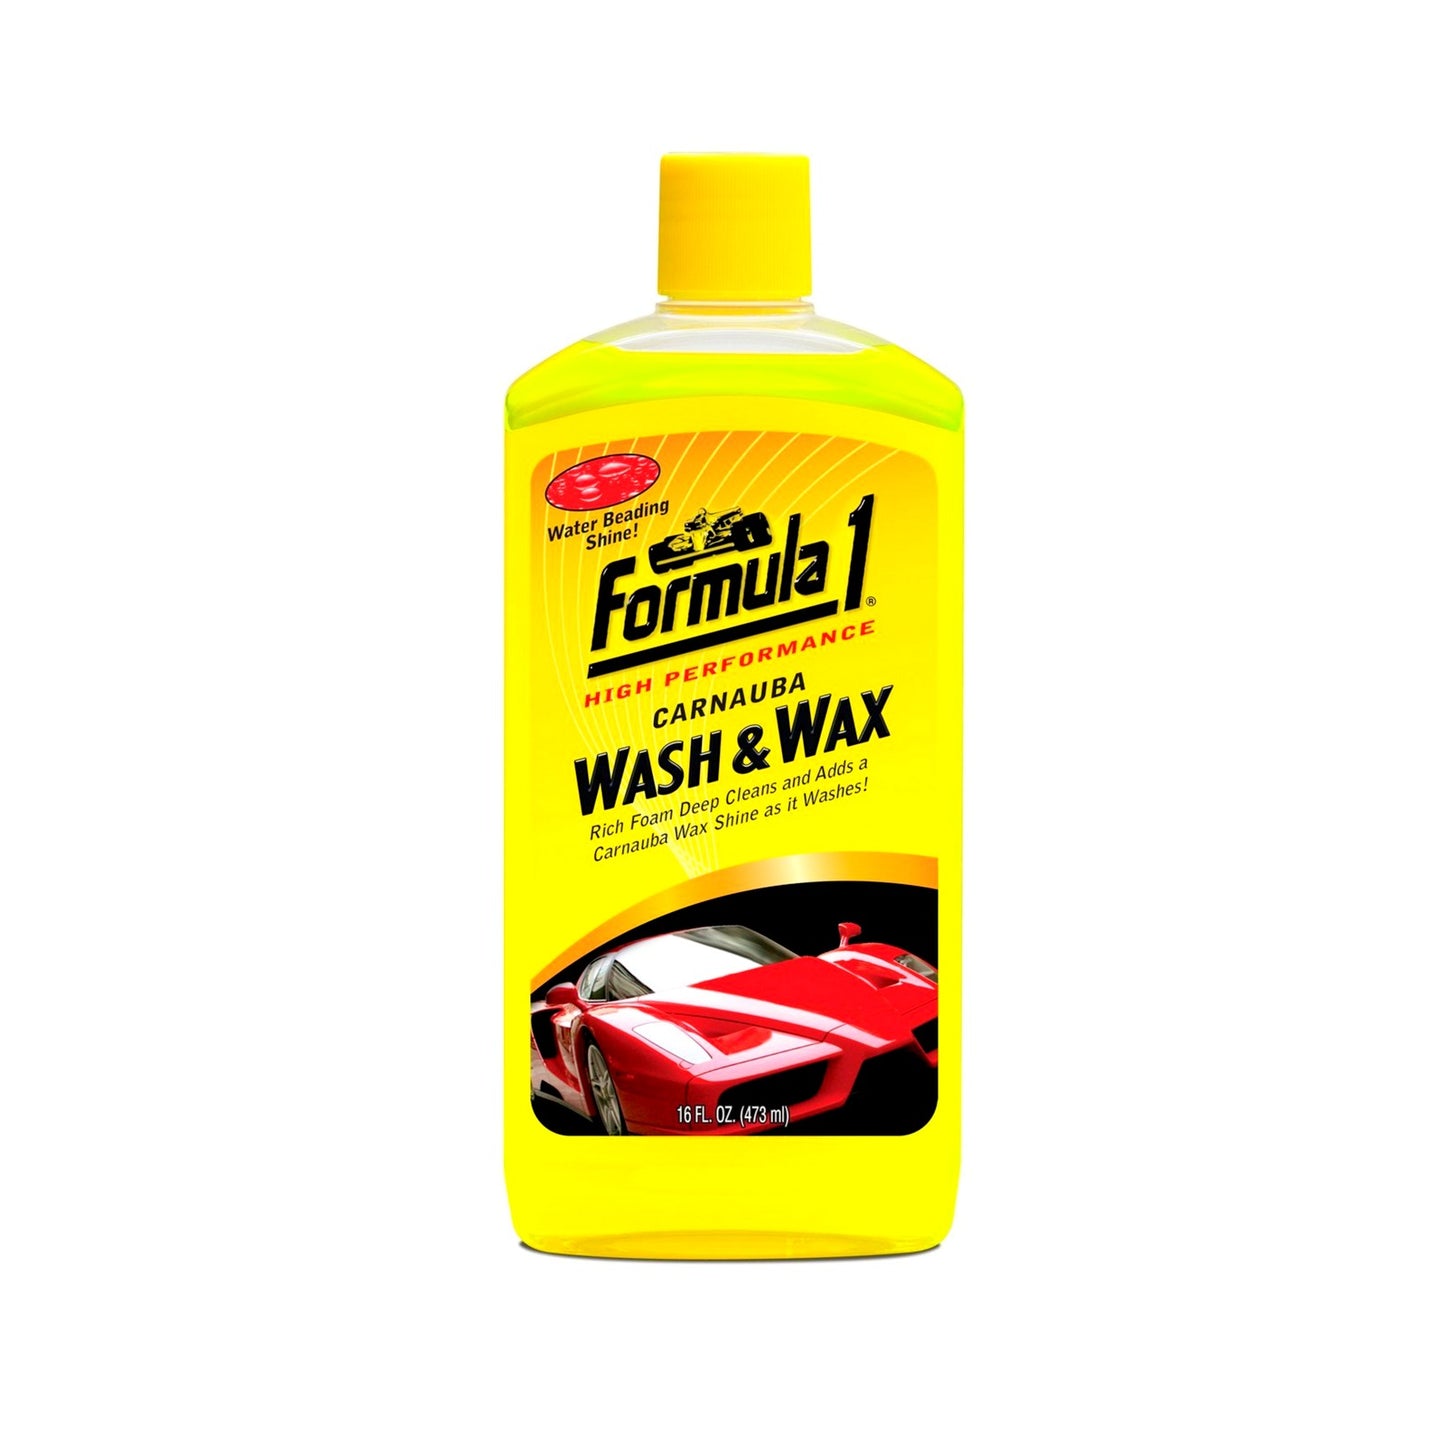 WASH & WAX - FORMULA 1